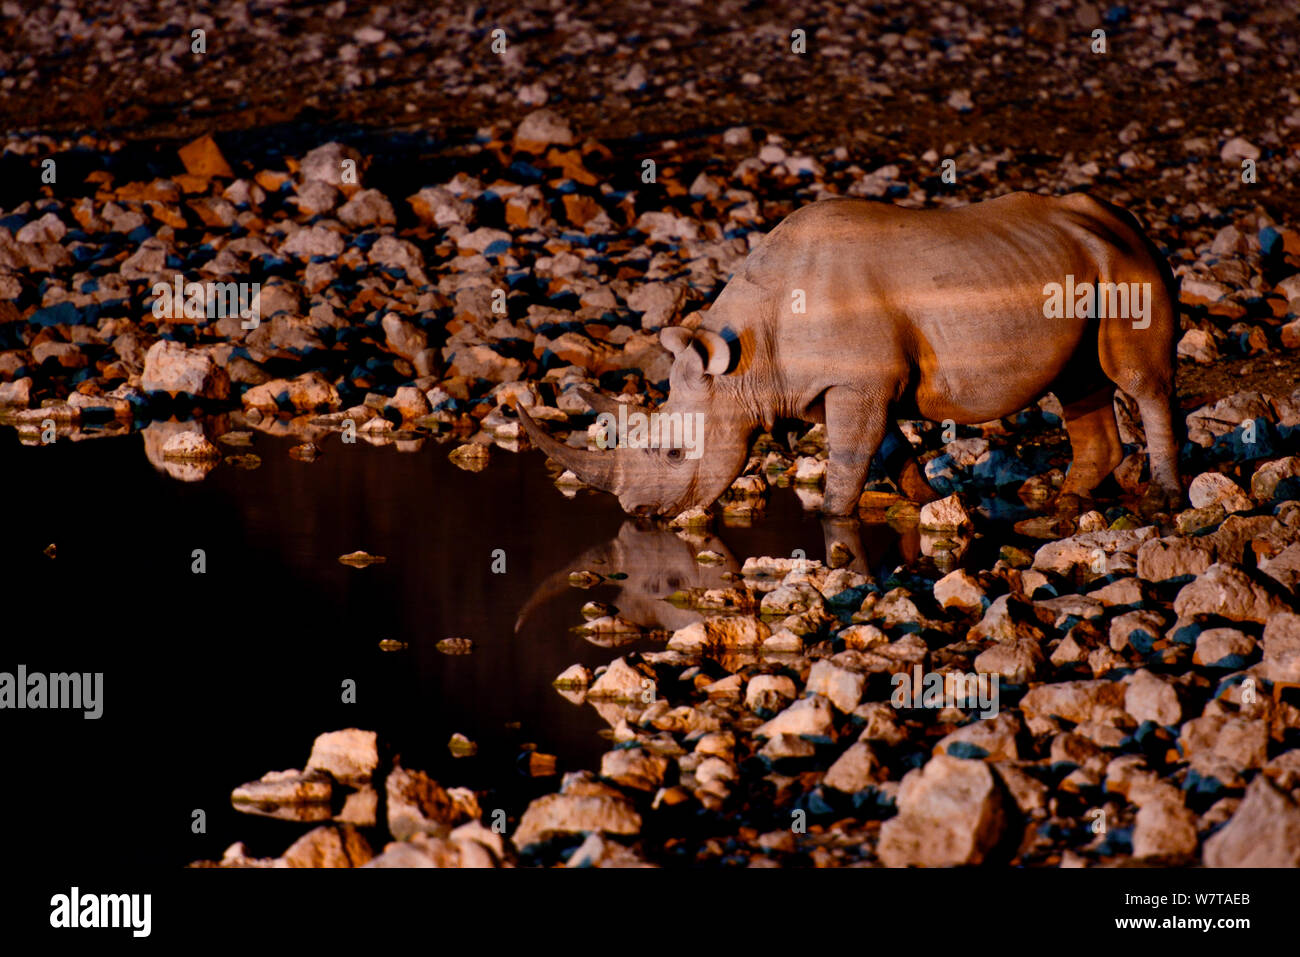 Le rhinocéros noir (Diceros bicornis) au point d'eau la nuit, prises avec caméra infra rouge, pan Okaukuejo, Etosha National Park, Namibie. Espèces en danger critique d'extinction. Banque D'Images